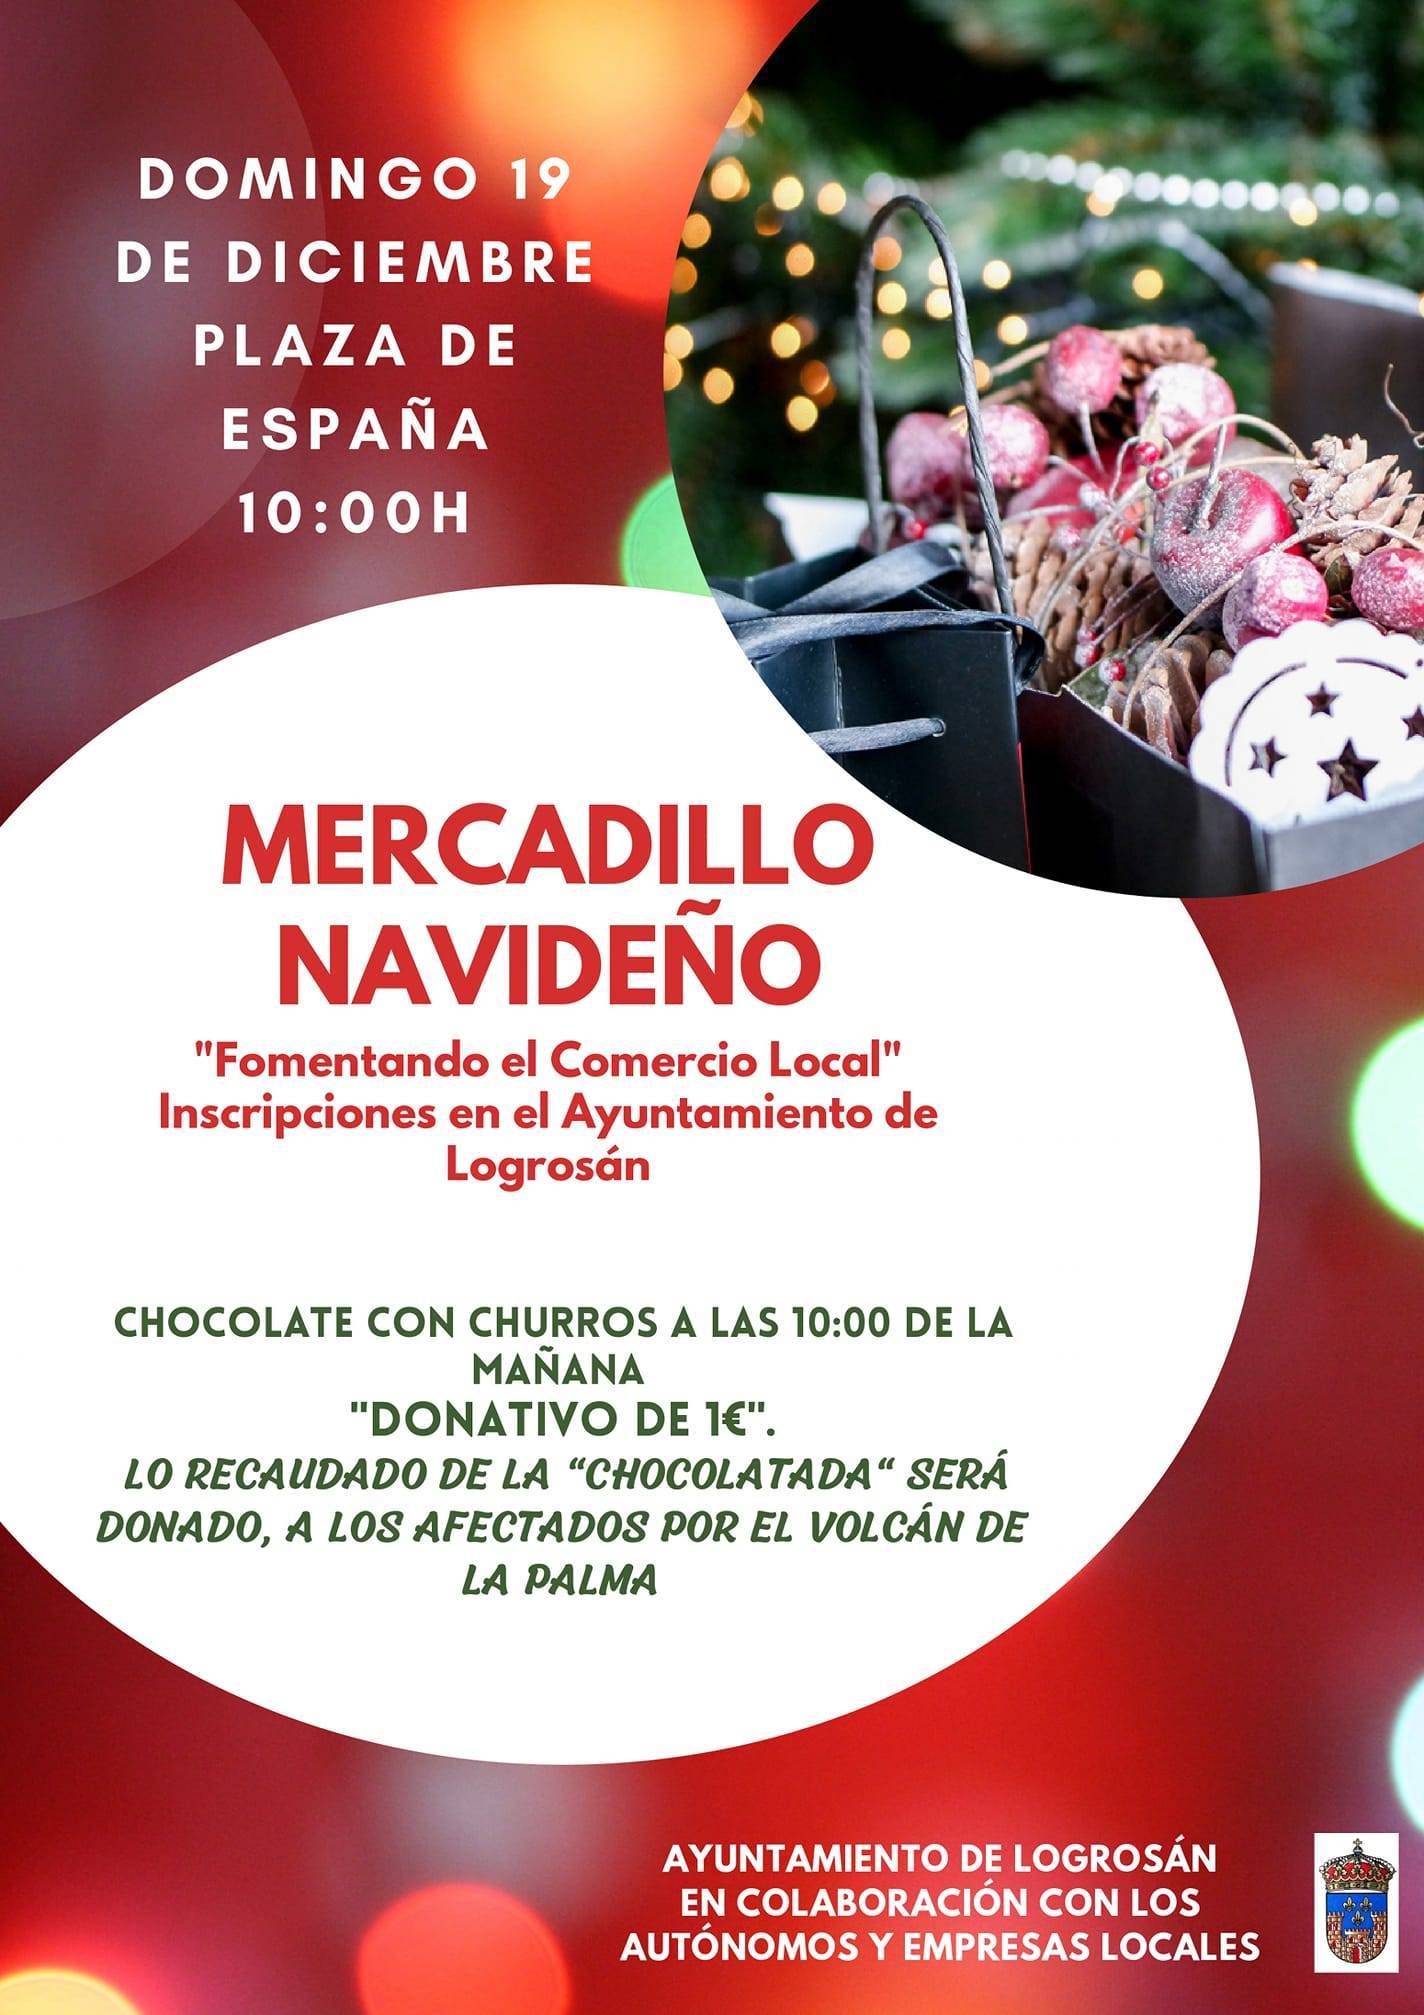 Mercadillo navideño (2021) - Logrosán (Cáceres)